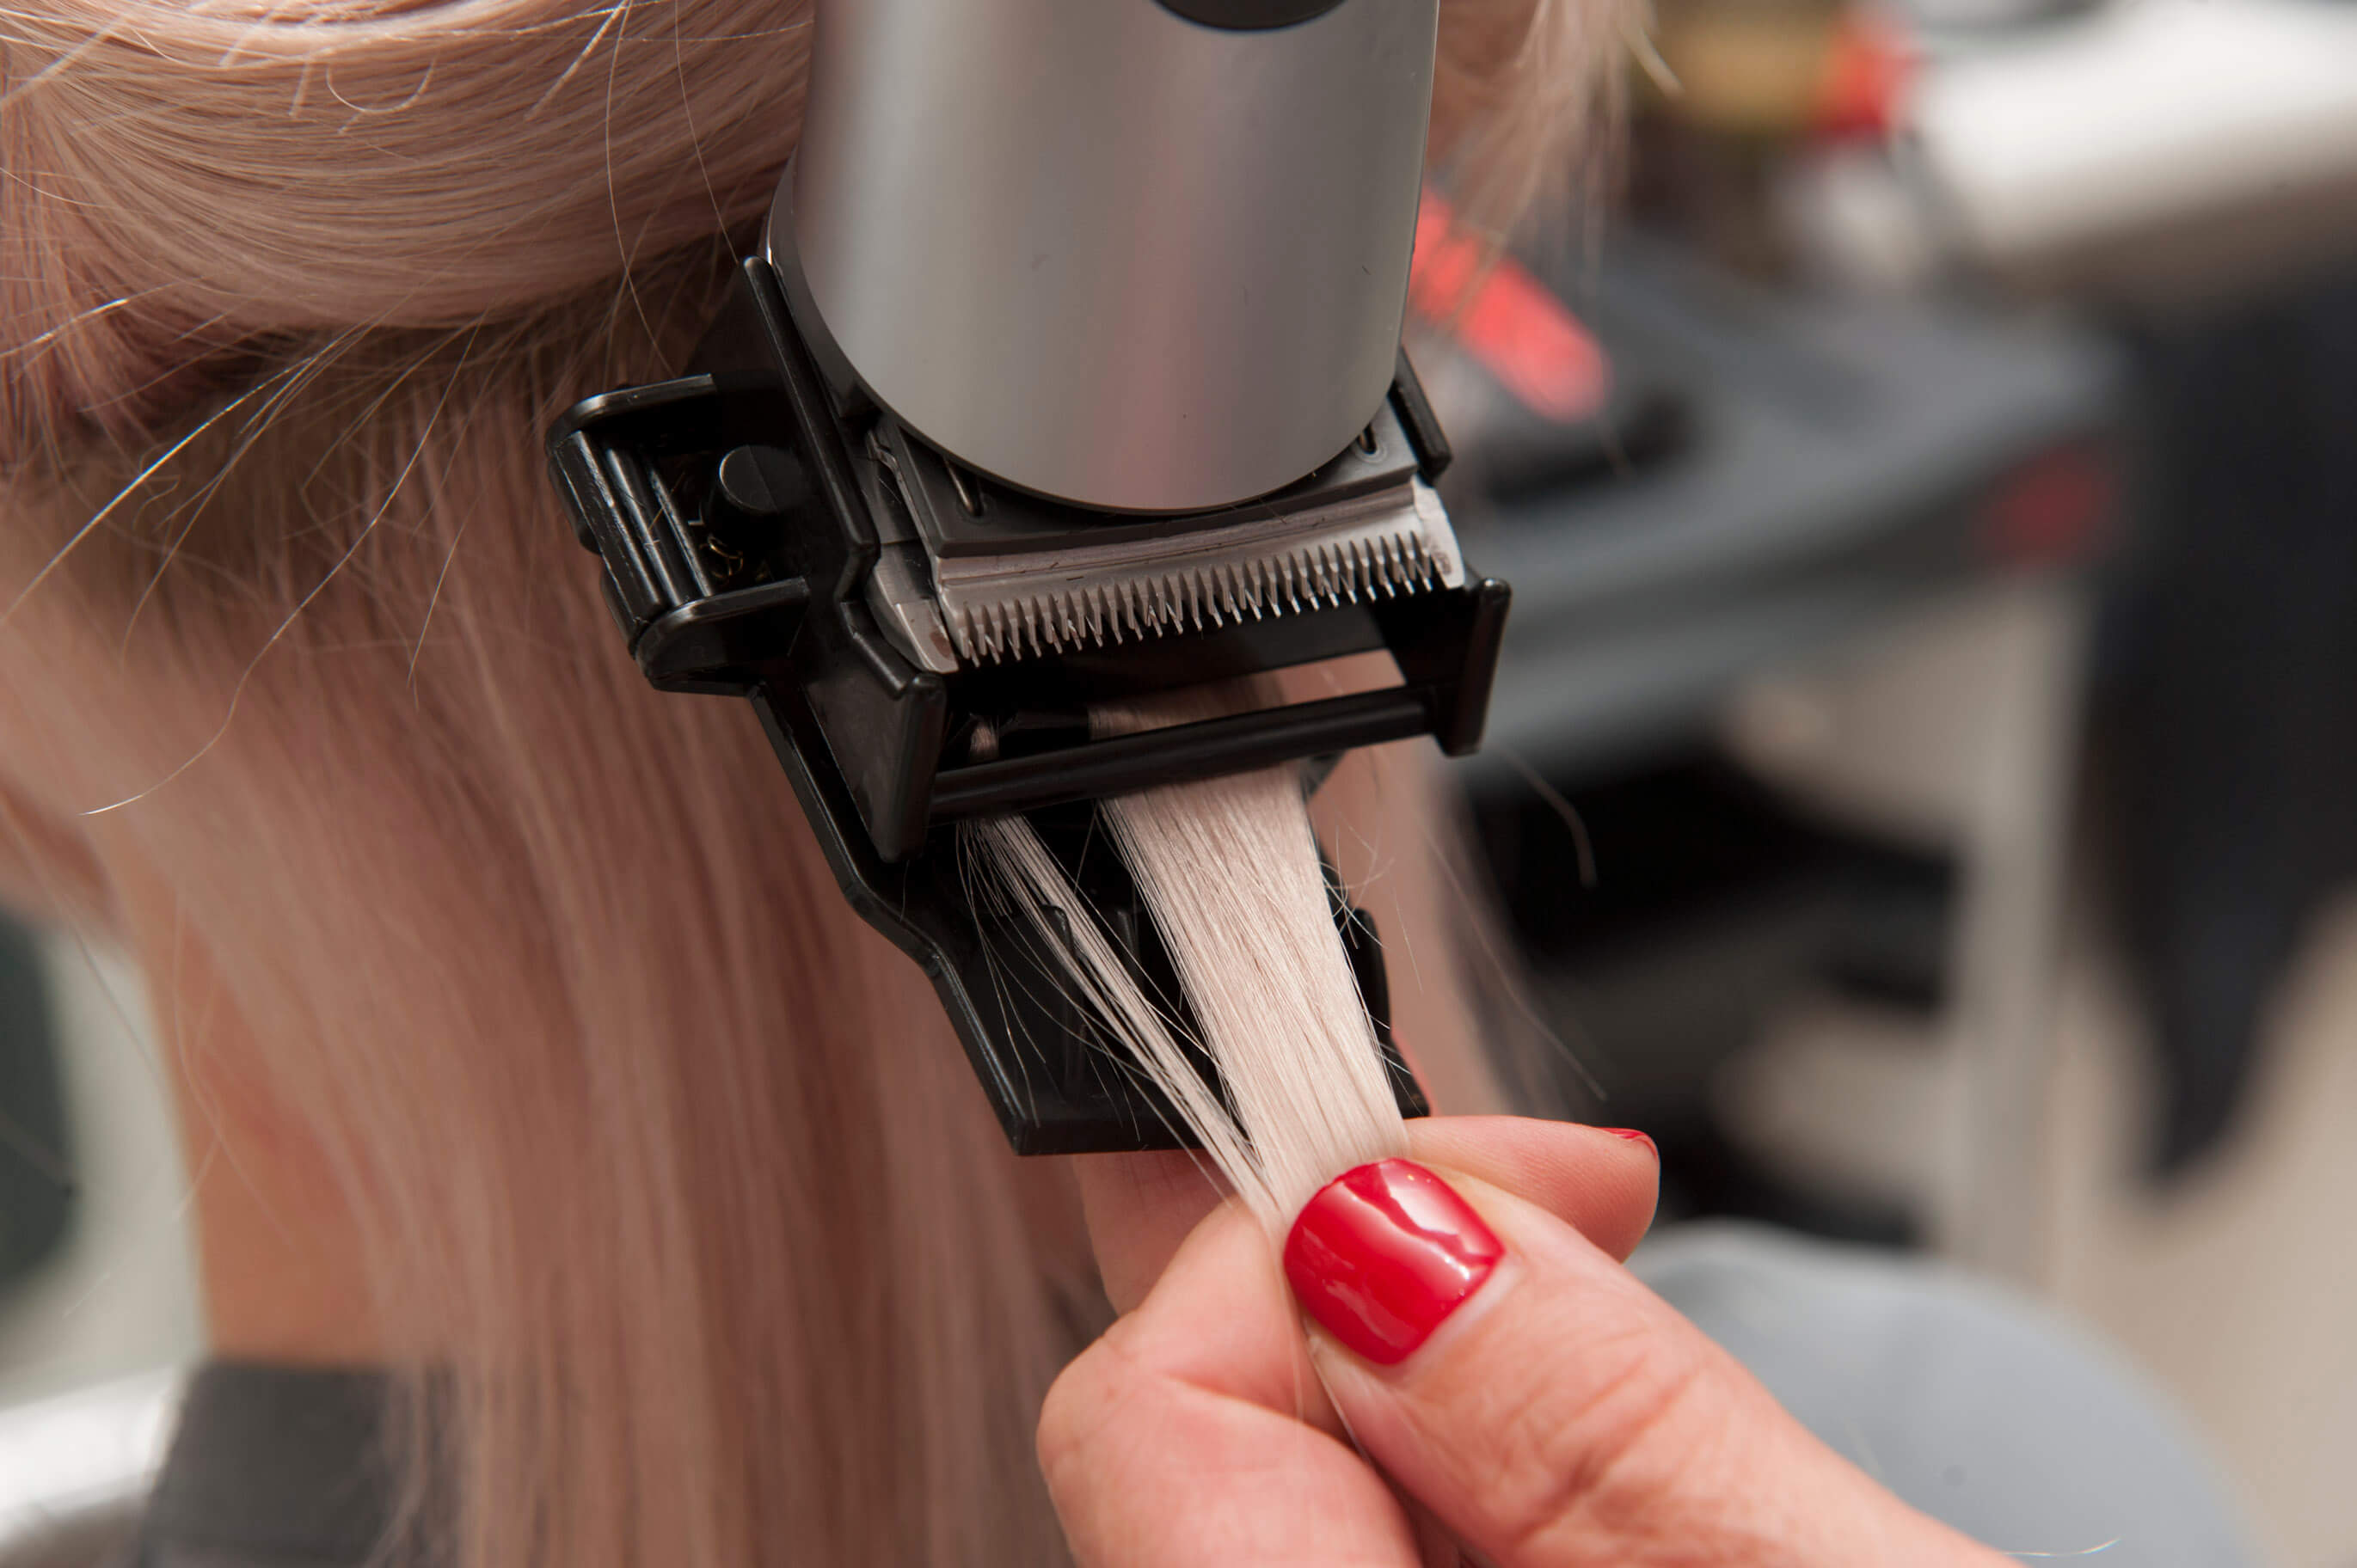 Полировка волос: описание, плюсы и минусы процедуры, кому подходит, фото до и после